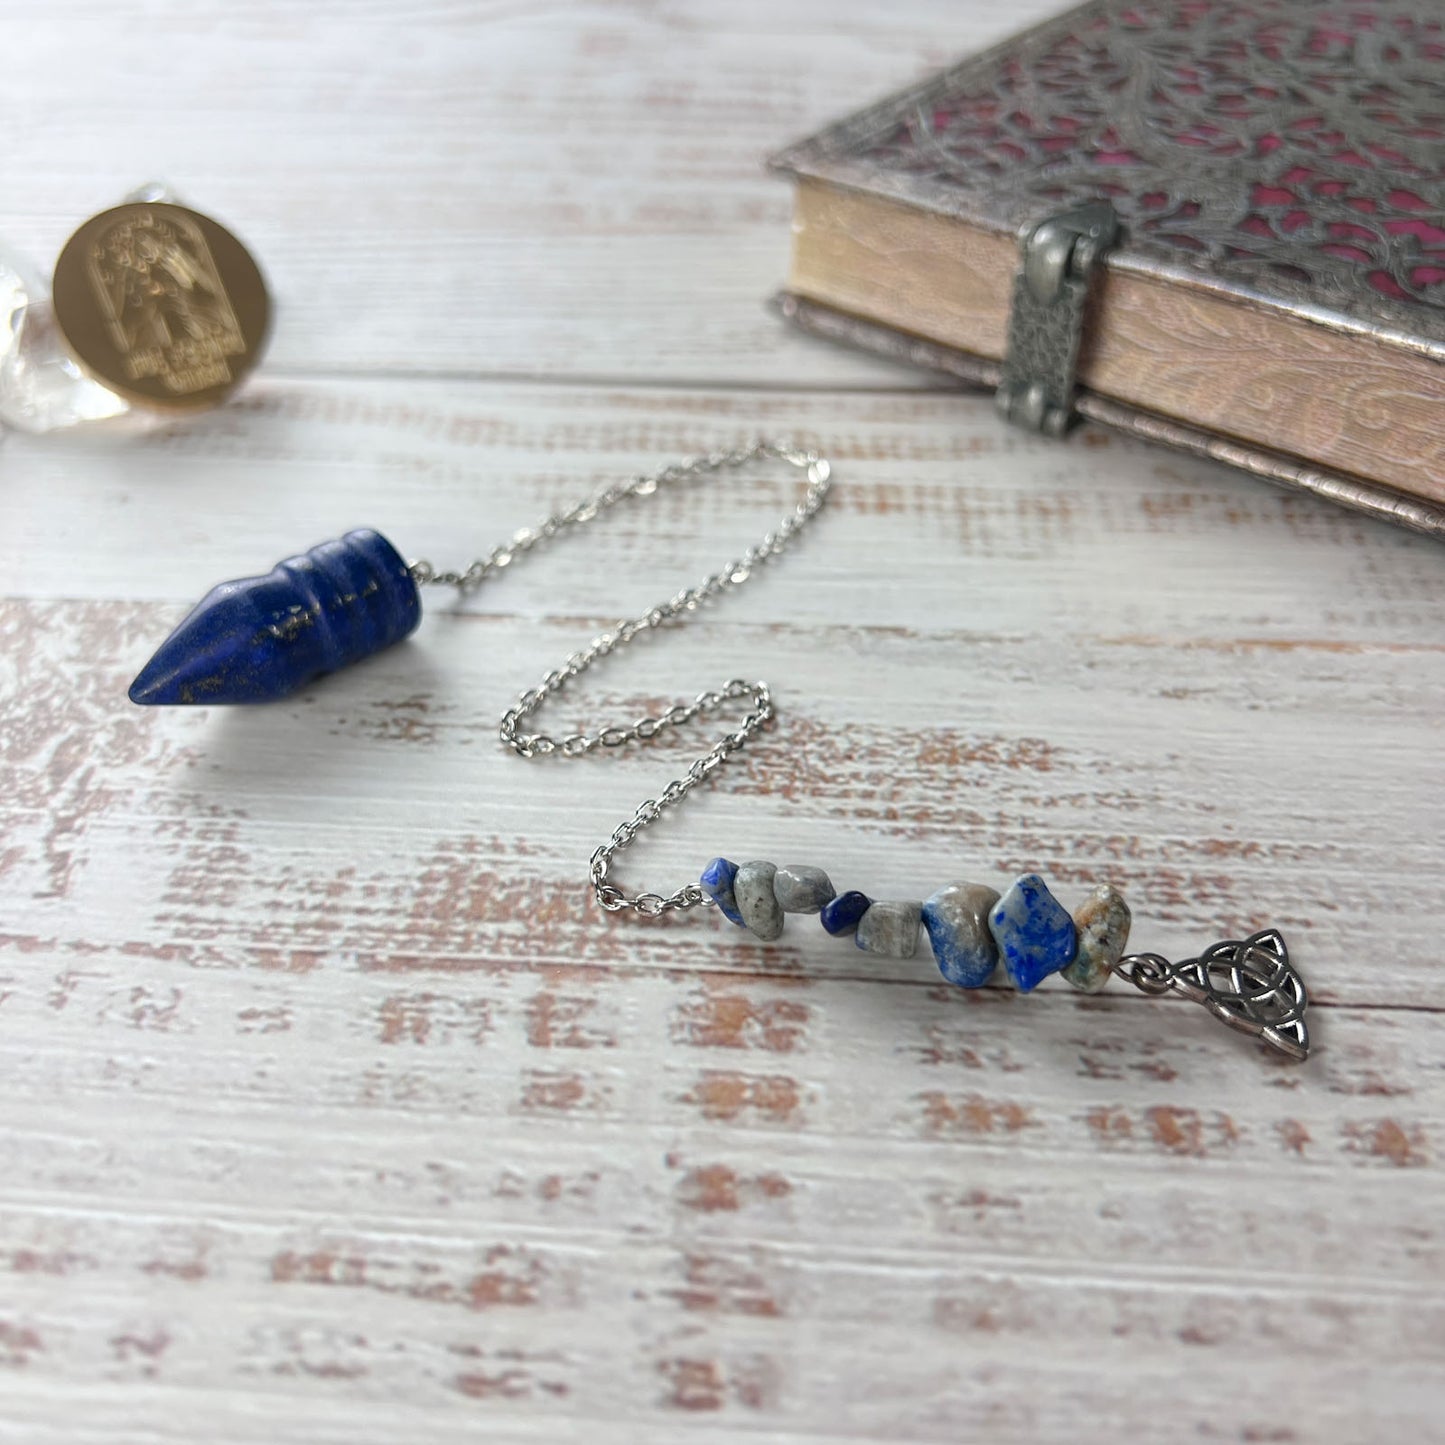 Lapis lazuli and Celtic knot triquetra charm pendulum Baguette Magick